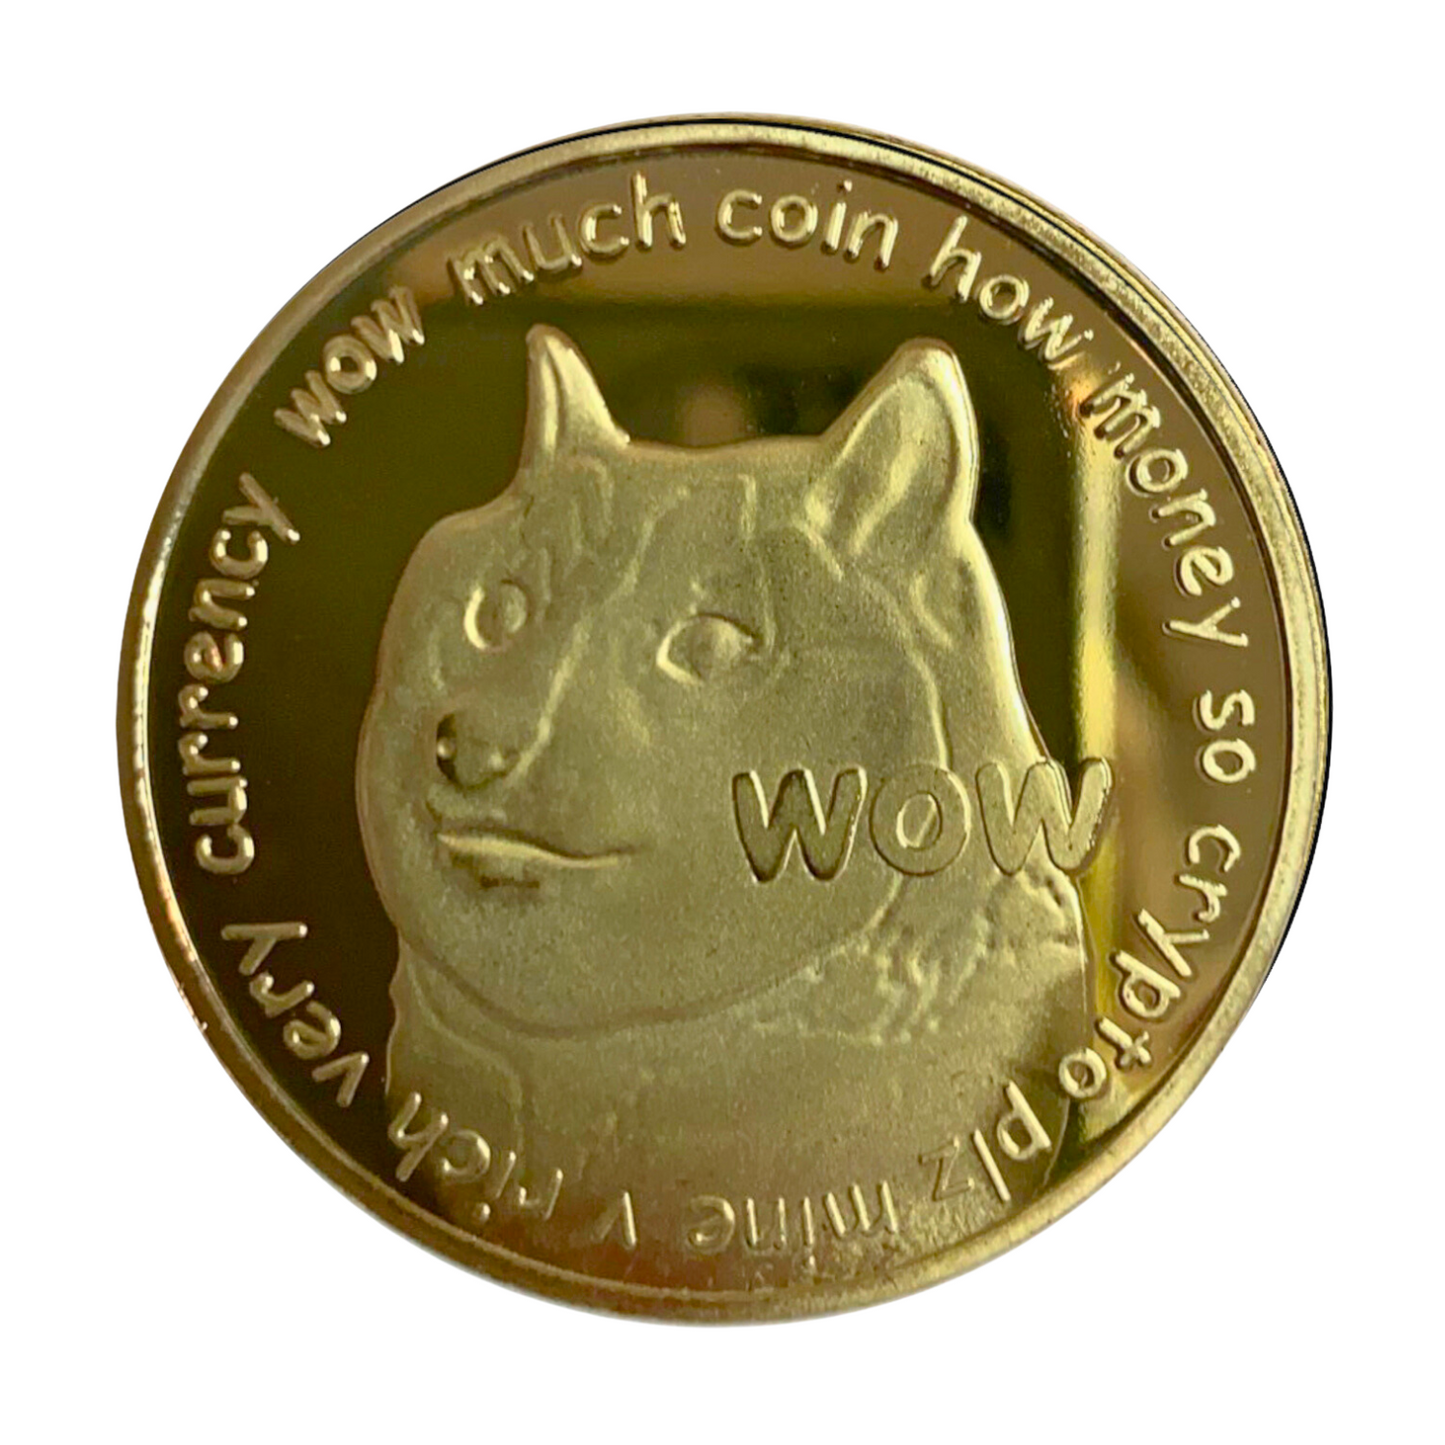 Dogecoin | DOGE Physical Crypto Coin Novelty Souvenir Token Gold Color